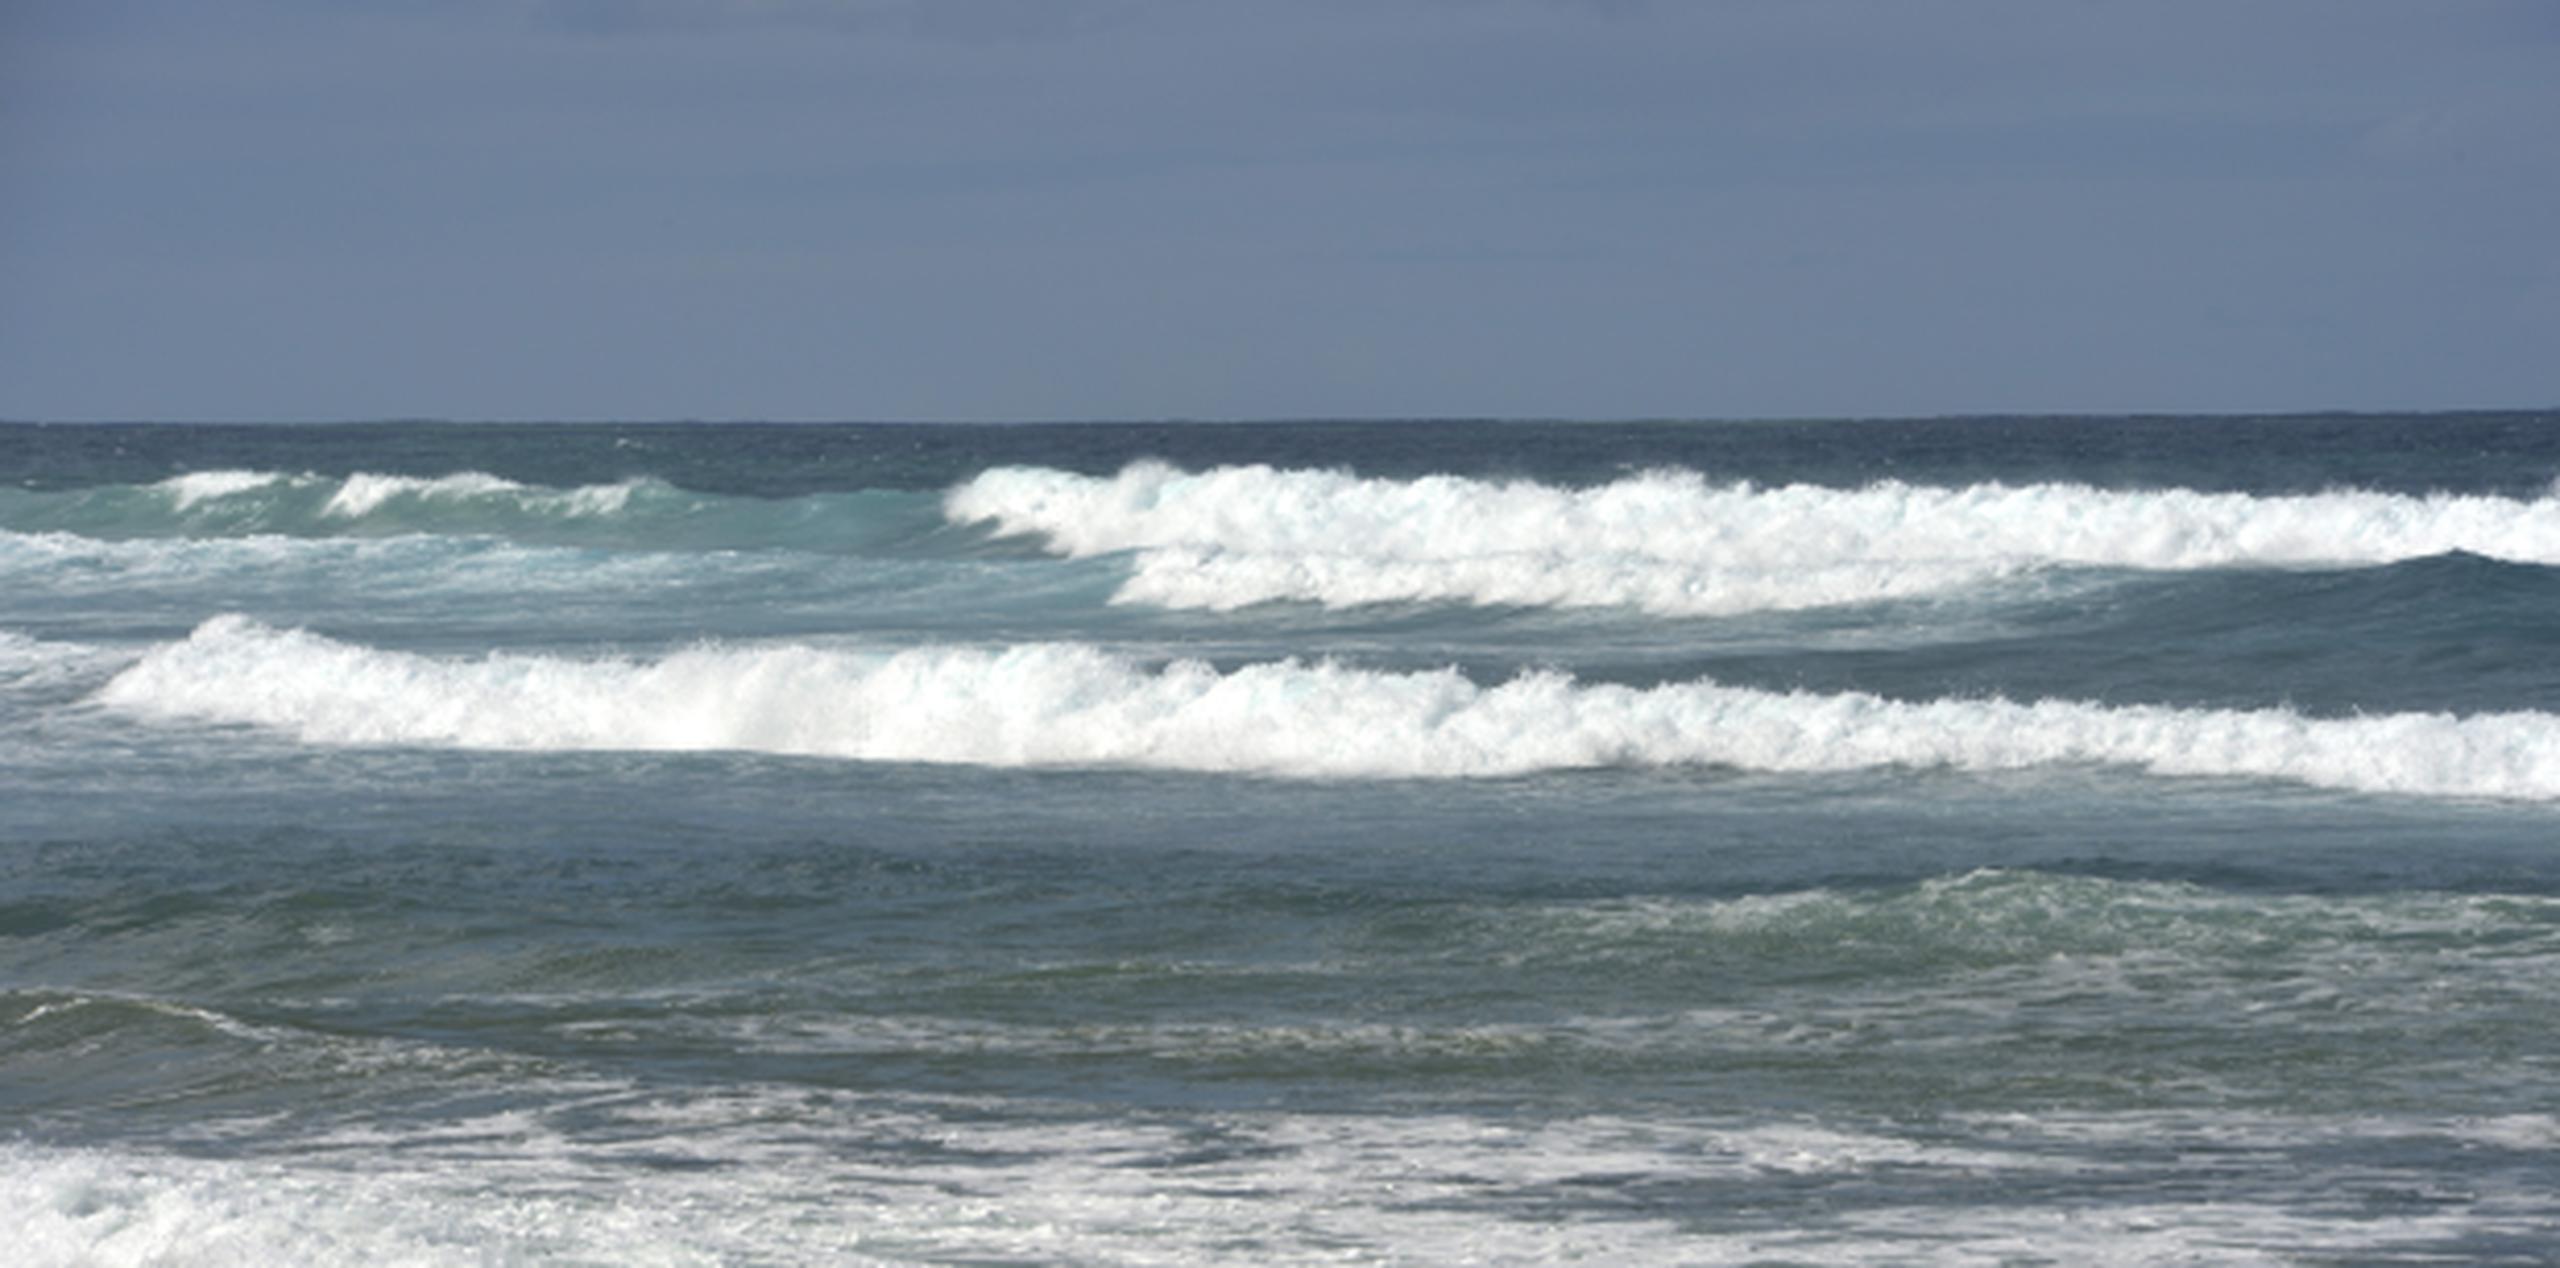 Al registrarse la emergencia, los vientos eran de 40 nudos y había olas de ocho pies. (Archivo)